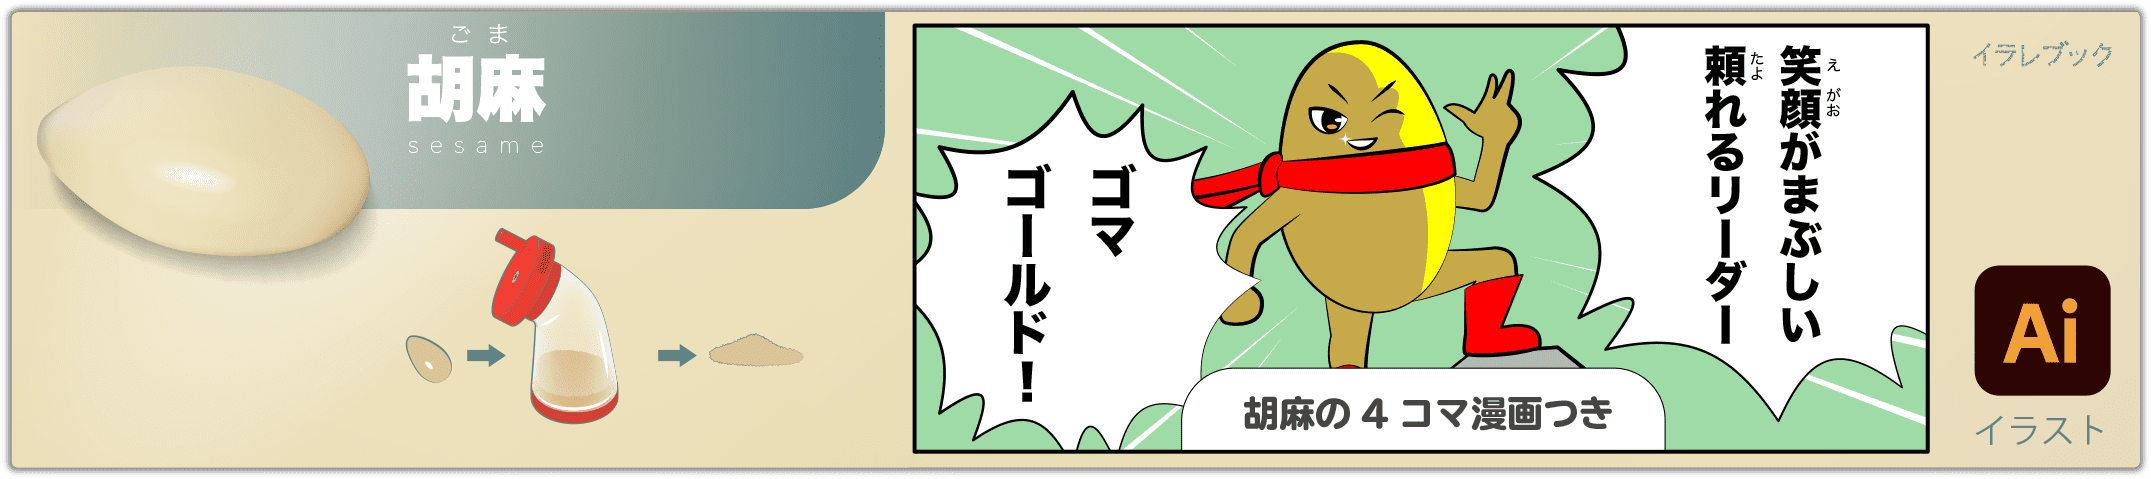 胡麻 sesame 4コマ漫画つきのイラスト